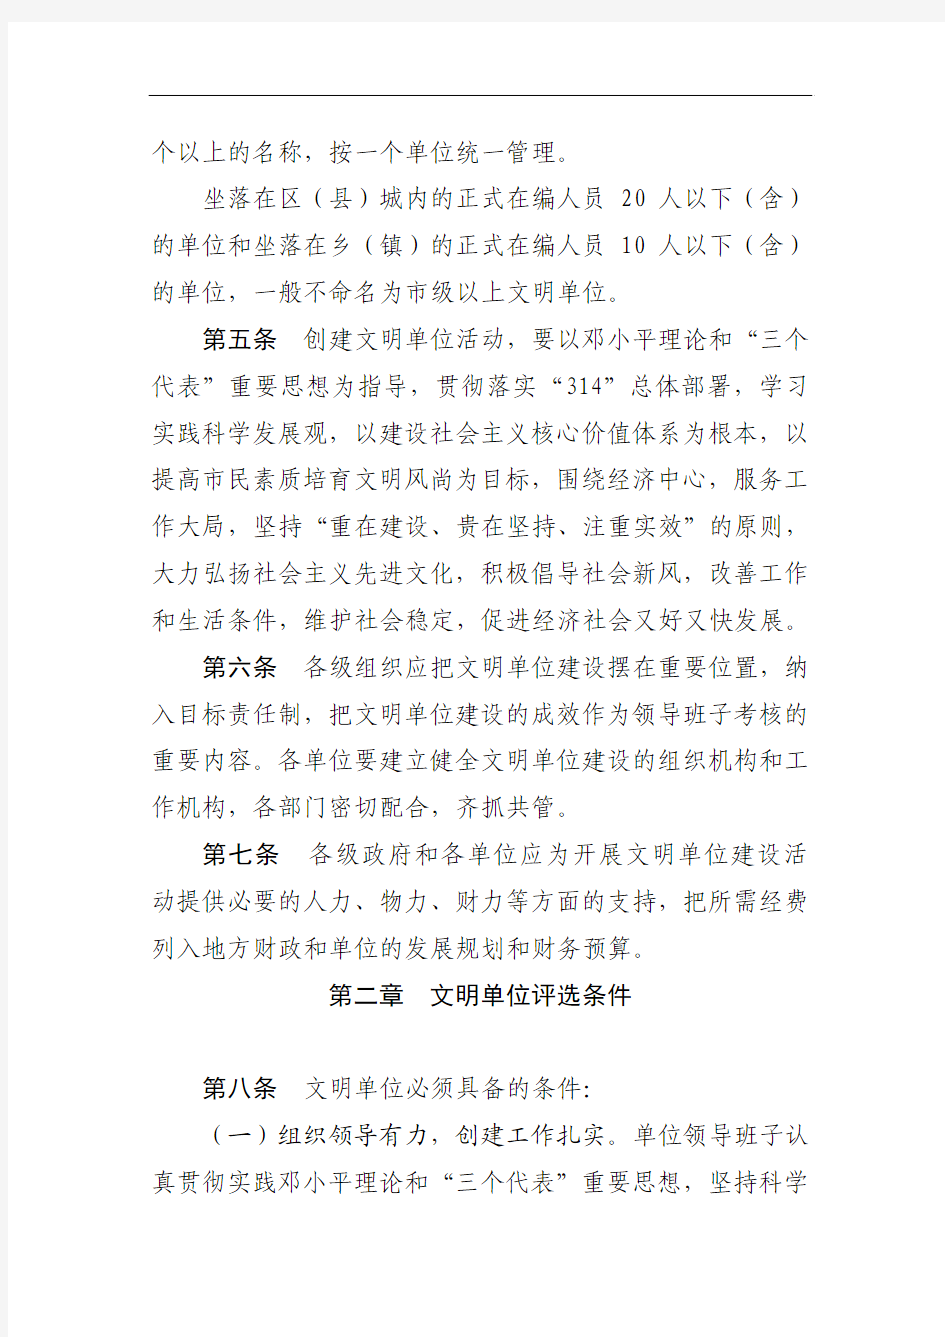 重庆市文明单位建设与管理办法(2011)